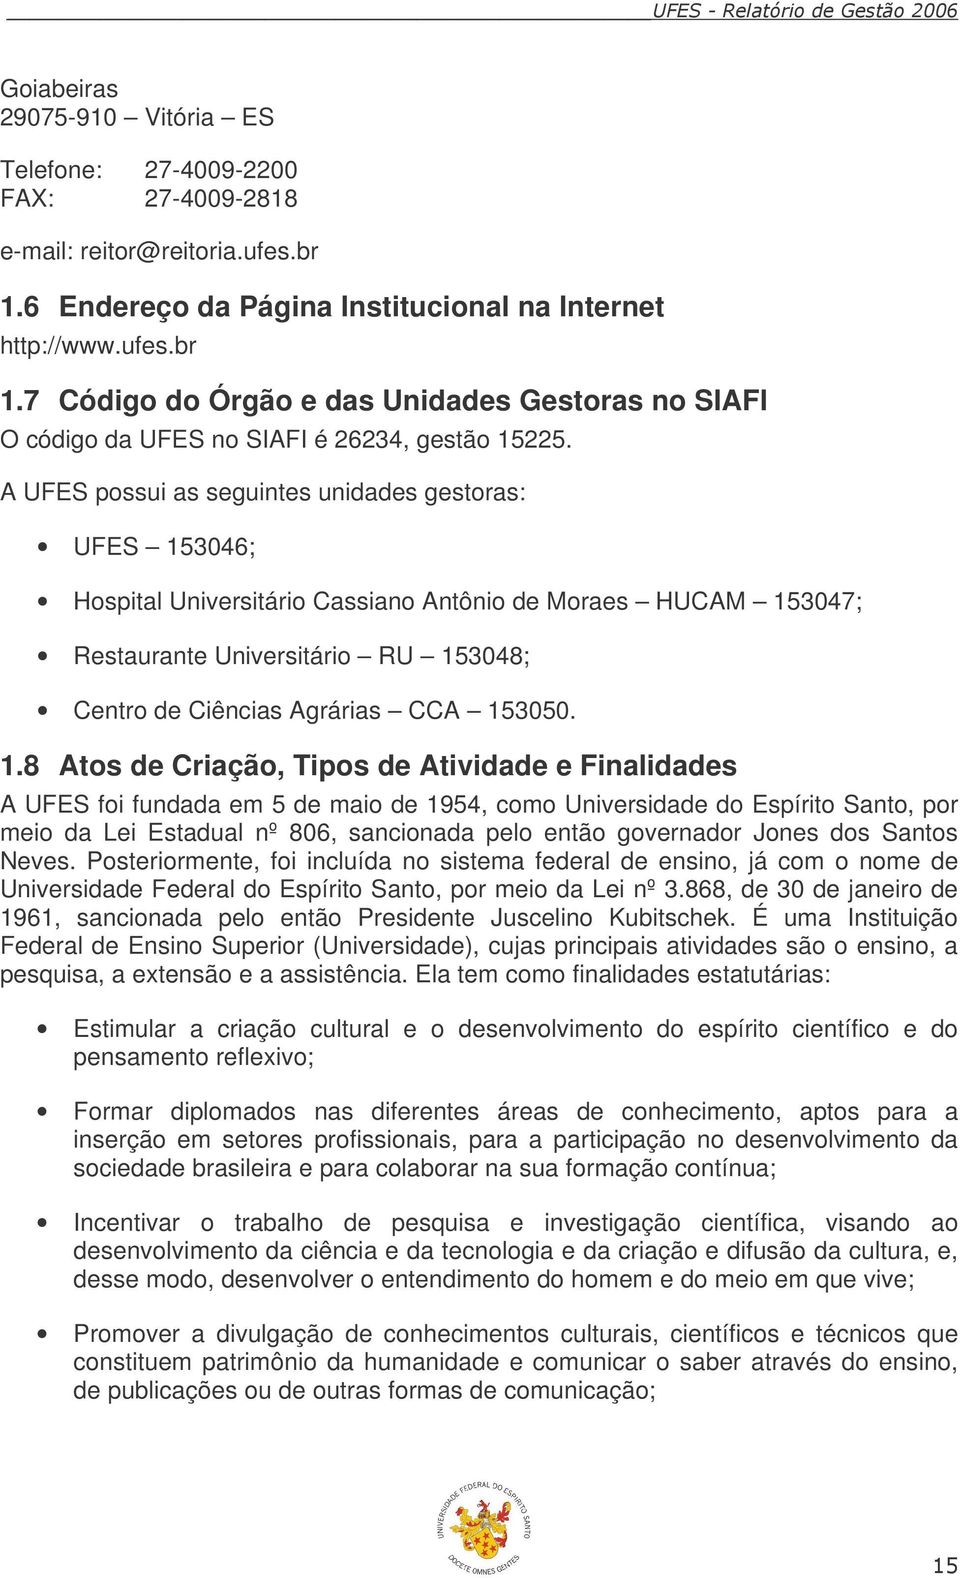 A UFES possui as seguintes unidades gestoras: UFES 153046; Hospital Universitário Cassiano Antônio de Moraes HUCAM 153047; Restaurante Universitário RU 153048; Centro de Ciências Agrárias CCA 153050.